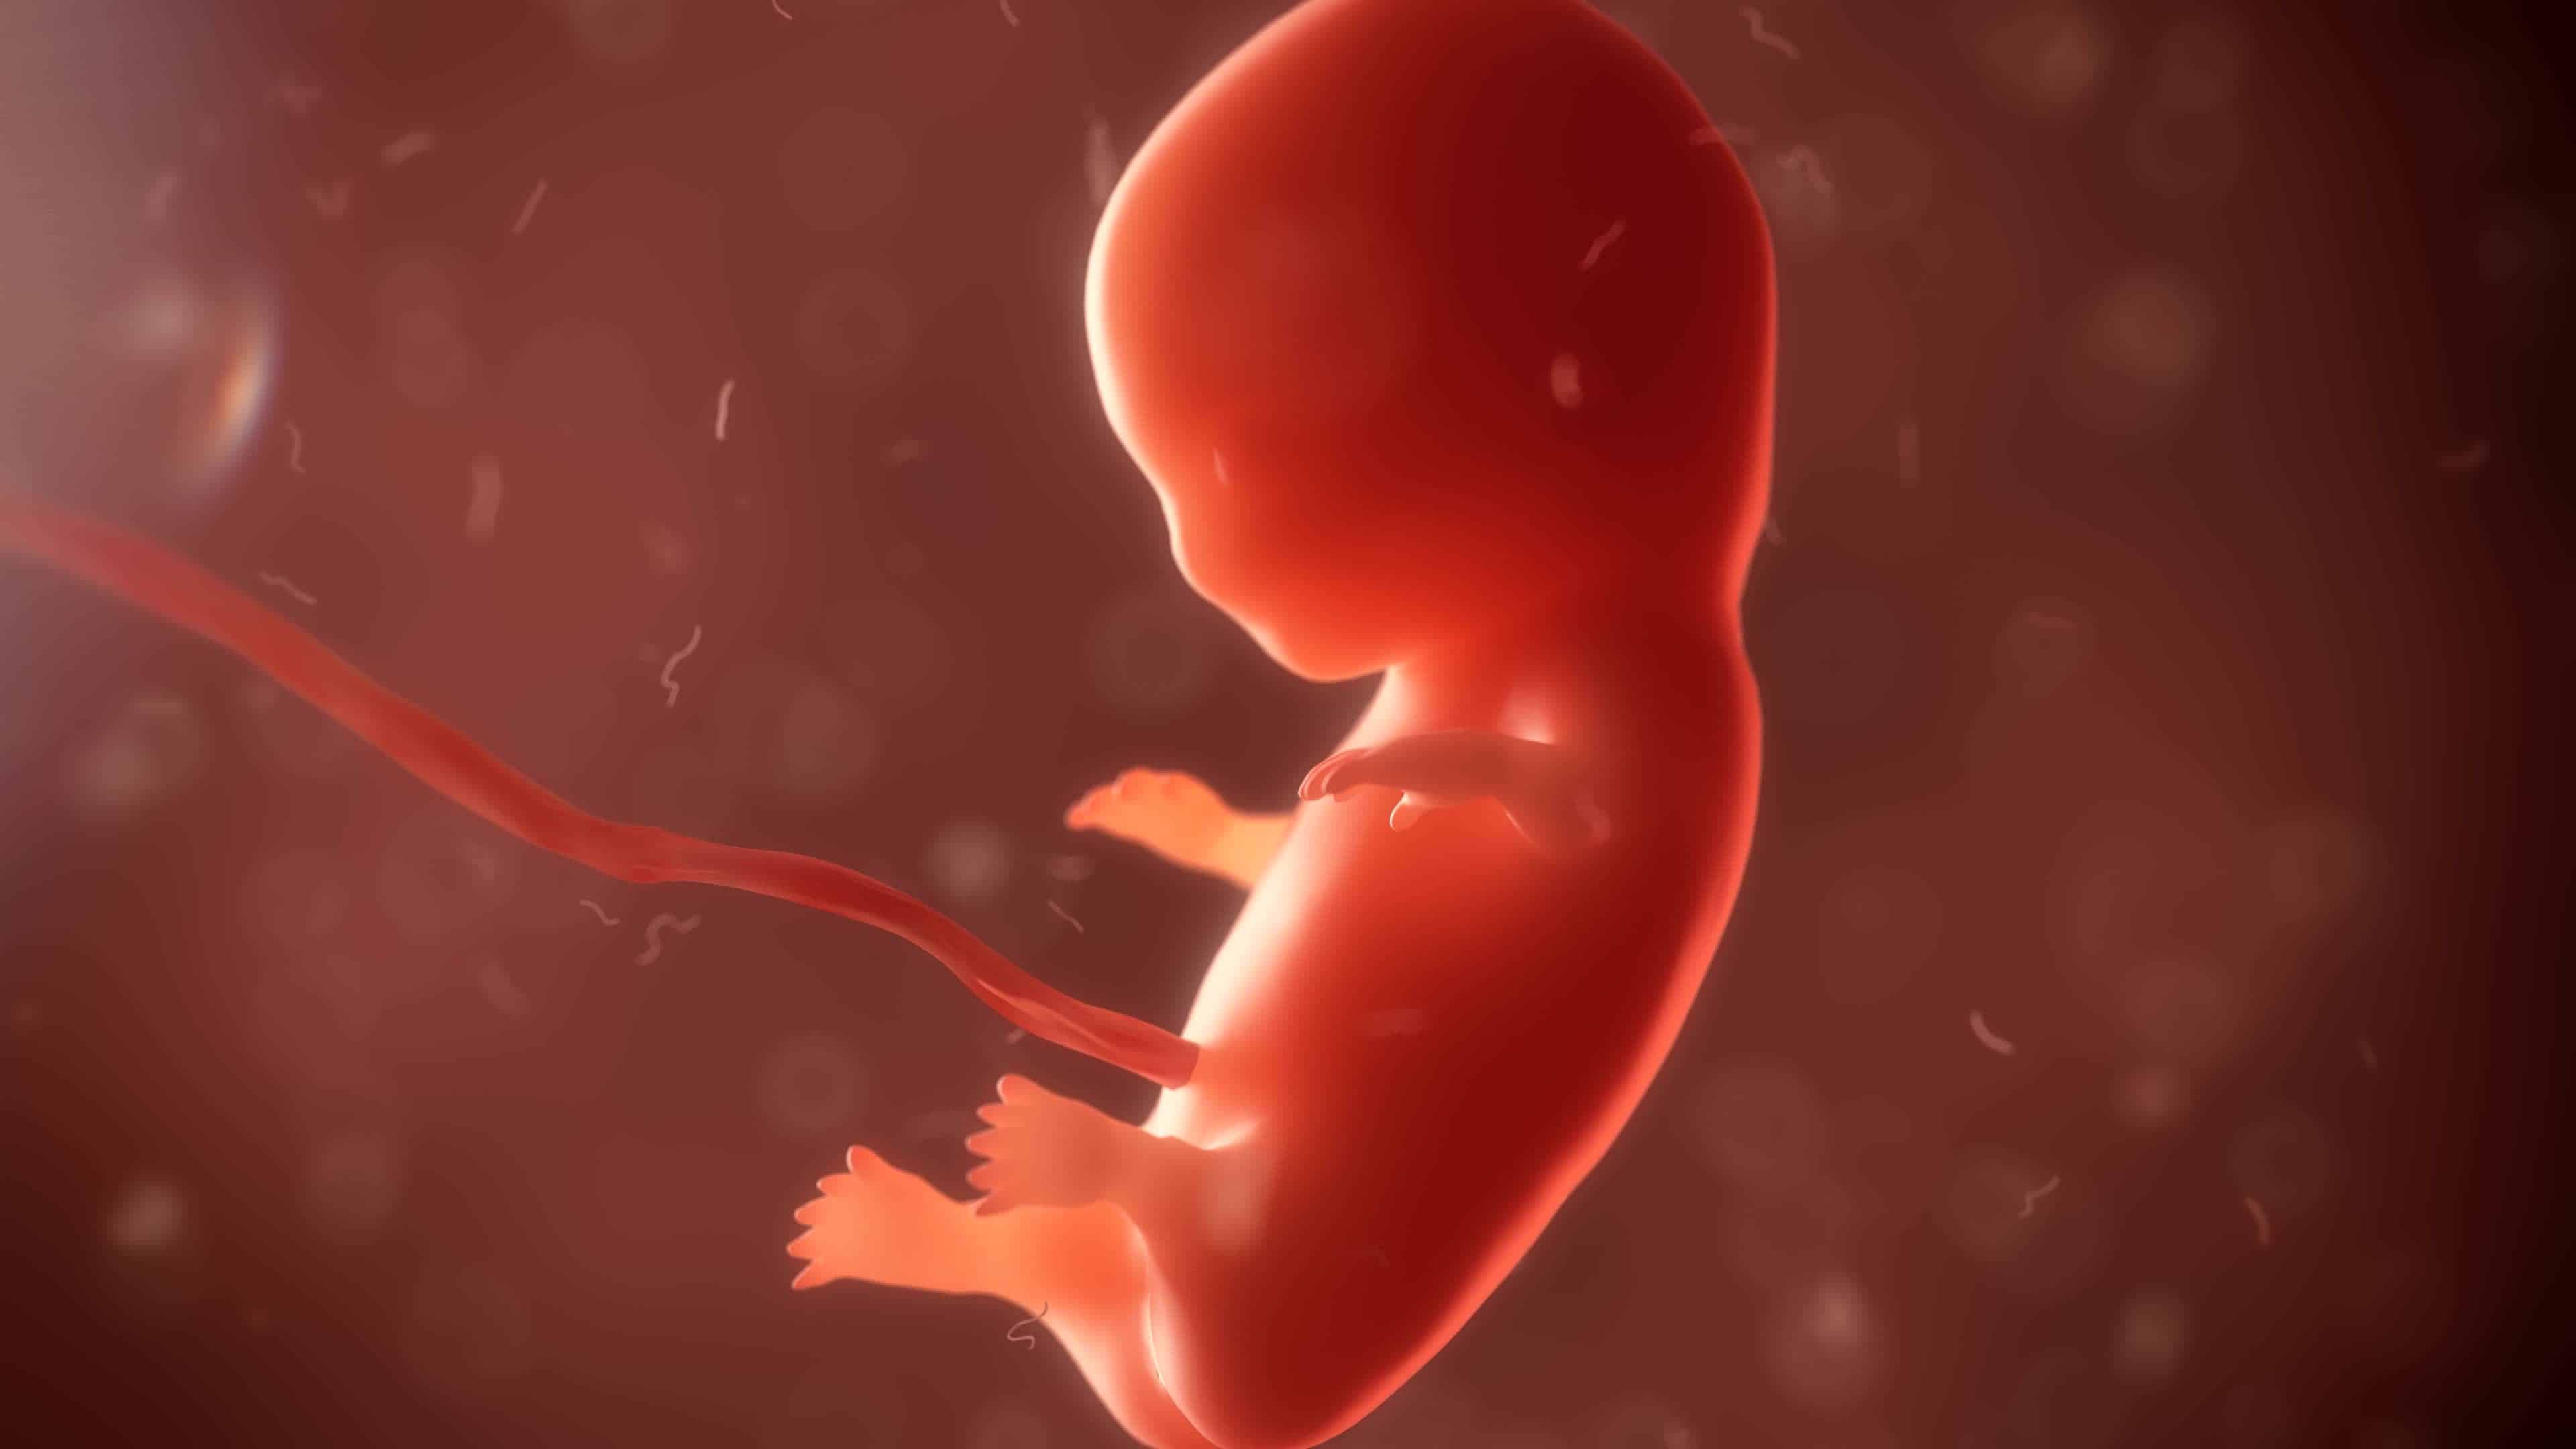 Внутриутробная жизнь ребенка